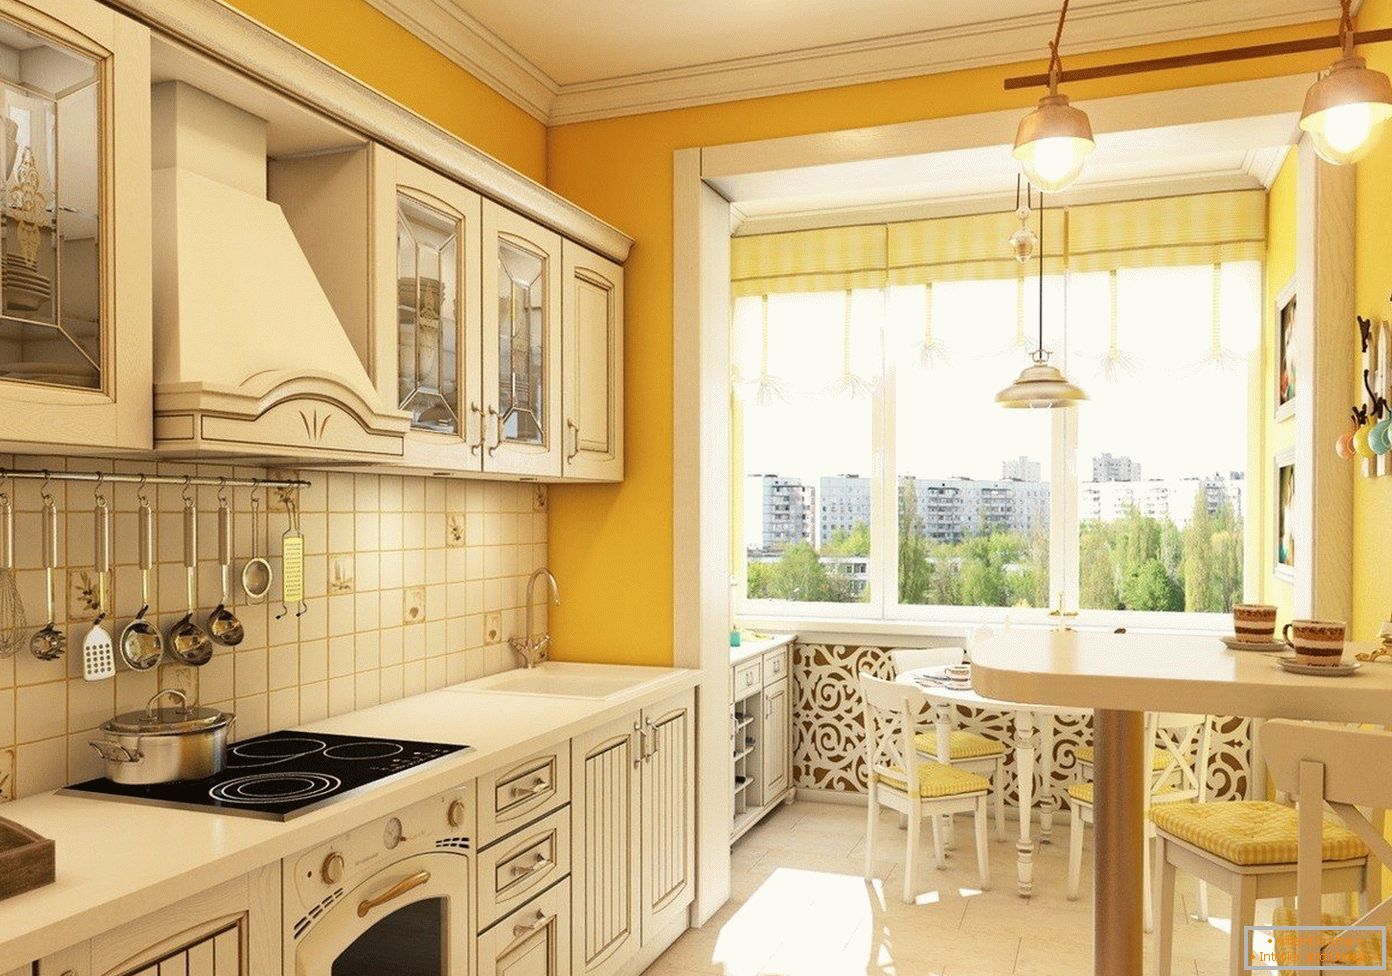 Cozinha amarela